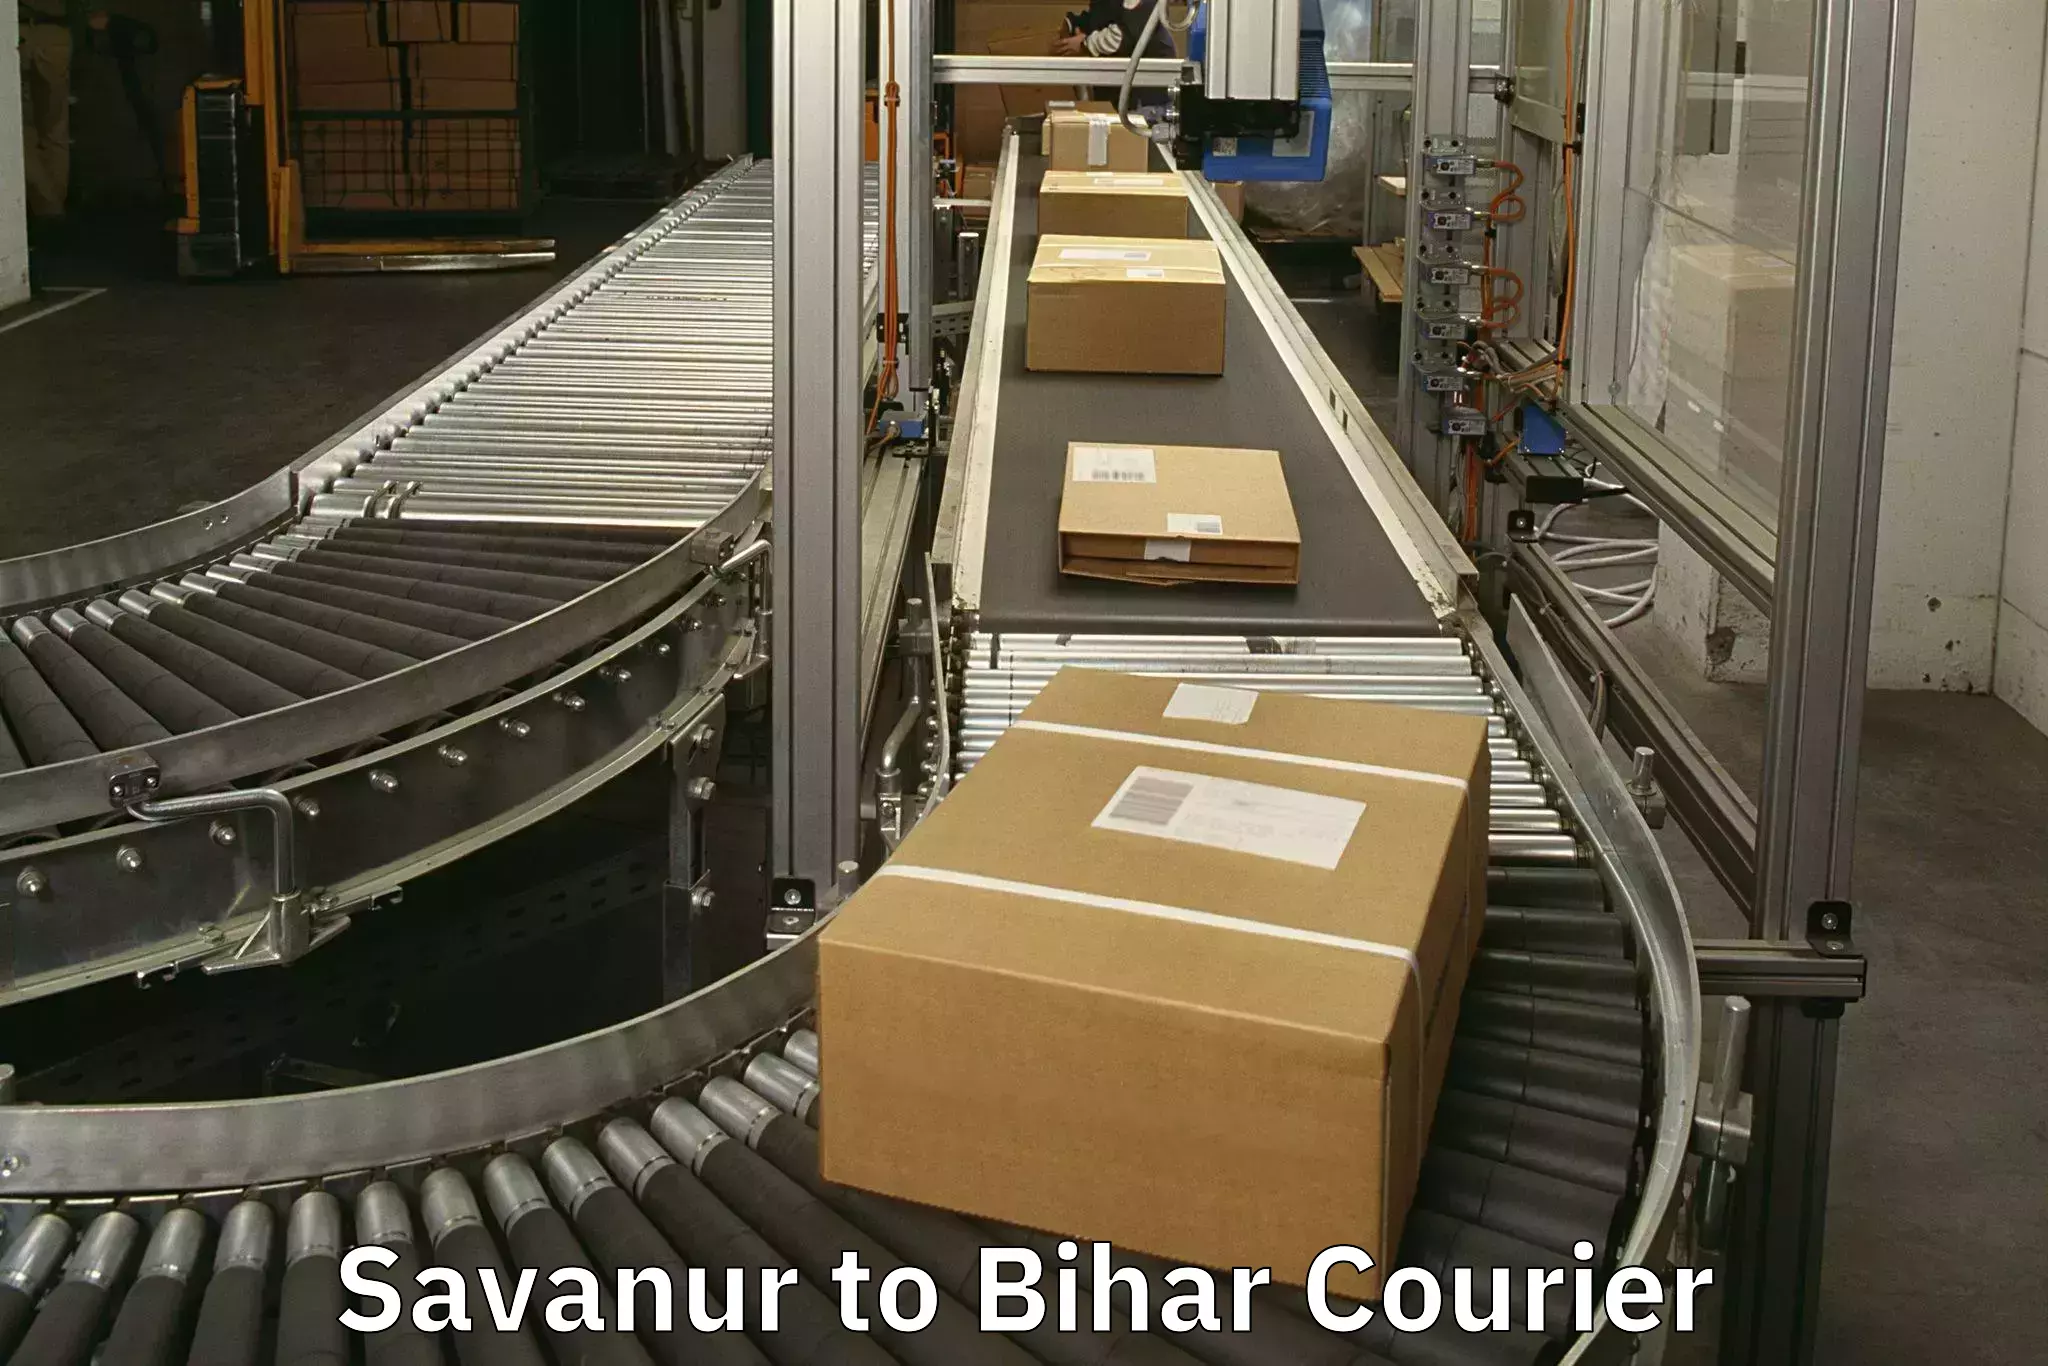 Baggage shipping experts Savanur to Bankipore